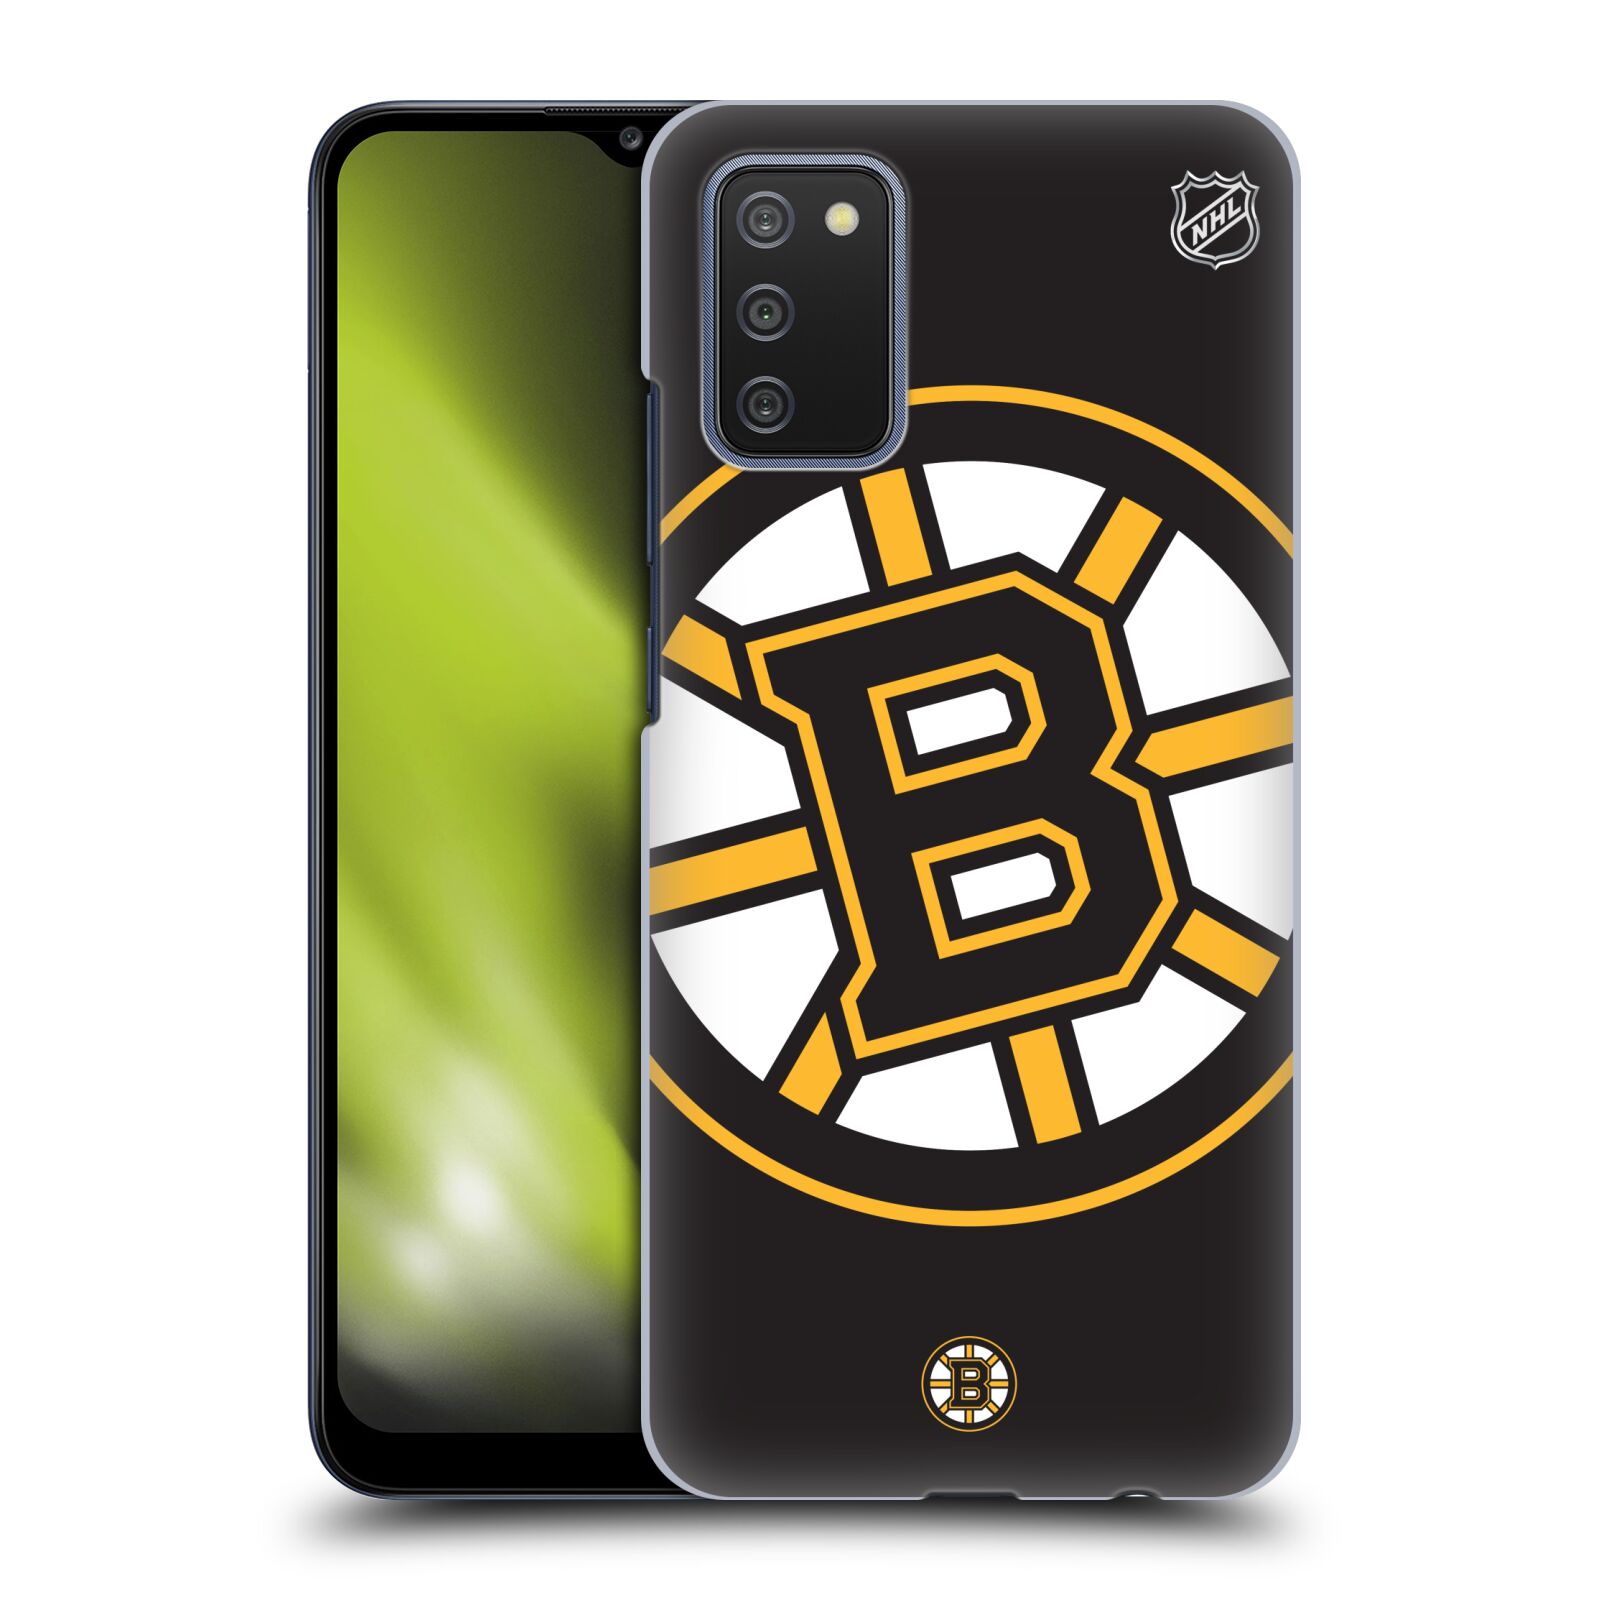 Pouzdro na mobil Samsung Galaxy A02s - HEAD CASE - Hokej NHL - Boston Bruins - velký znak